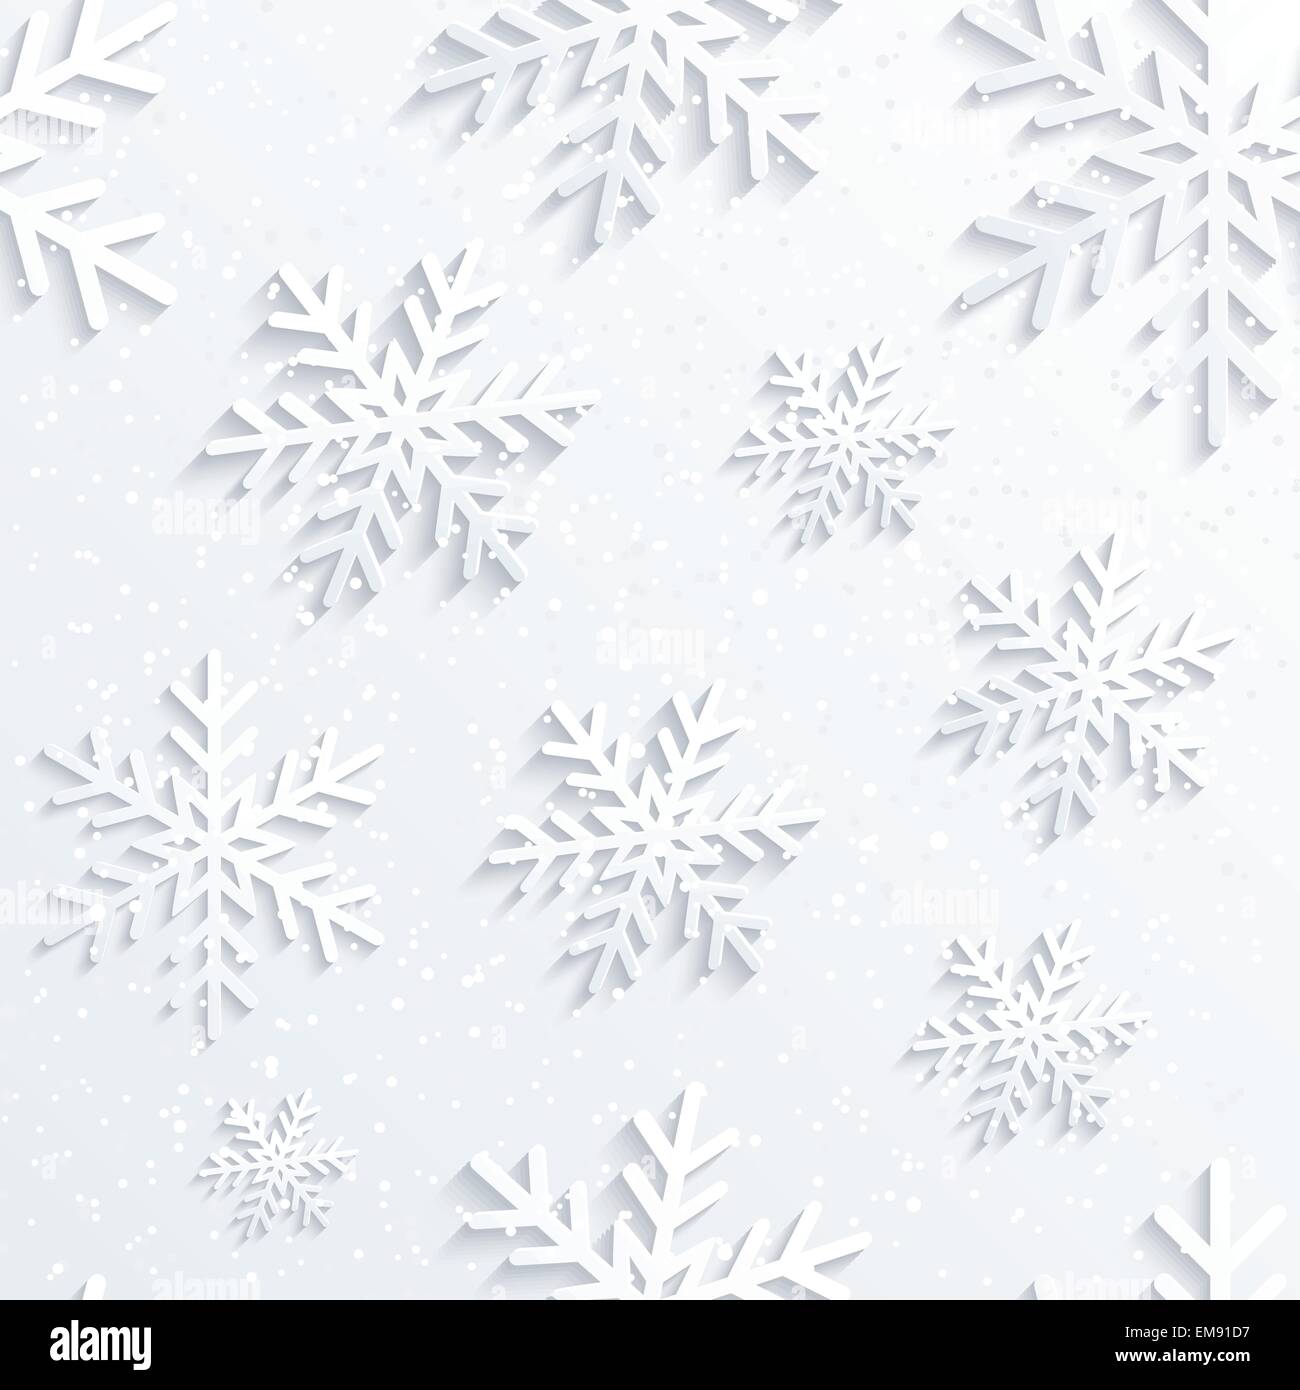 Weihnachten Schneeflocken Hintergrund Stock Vektor